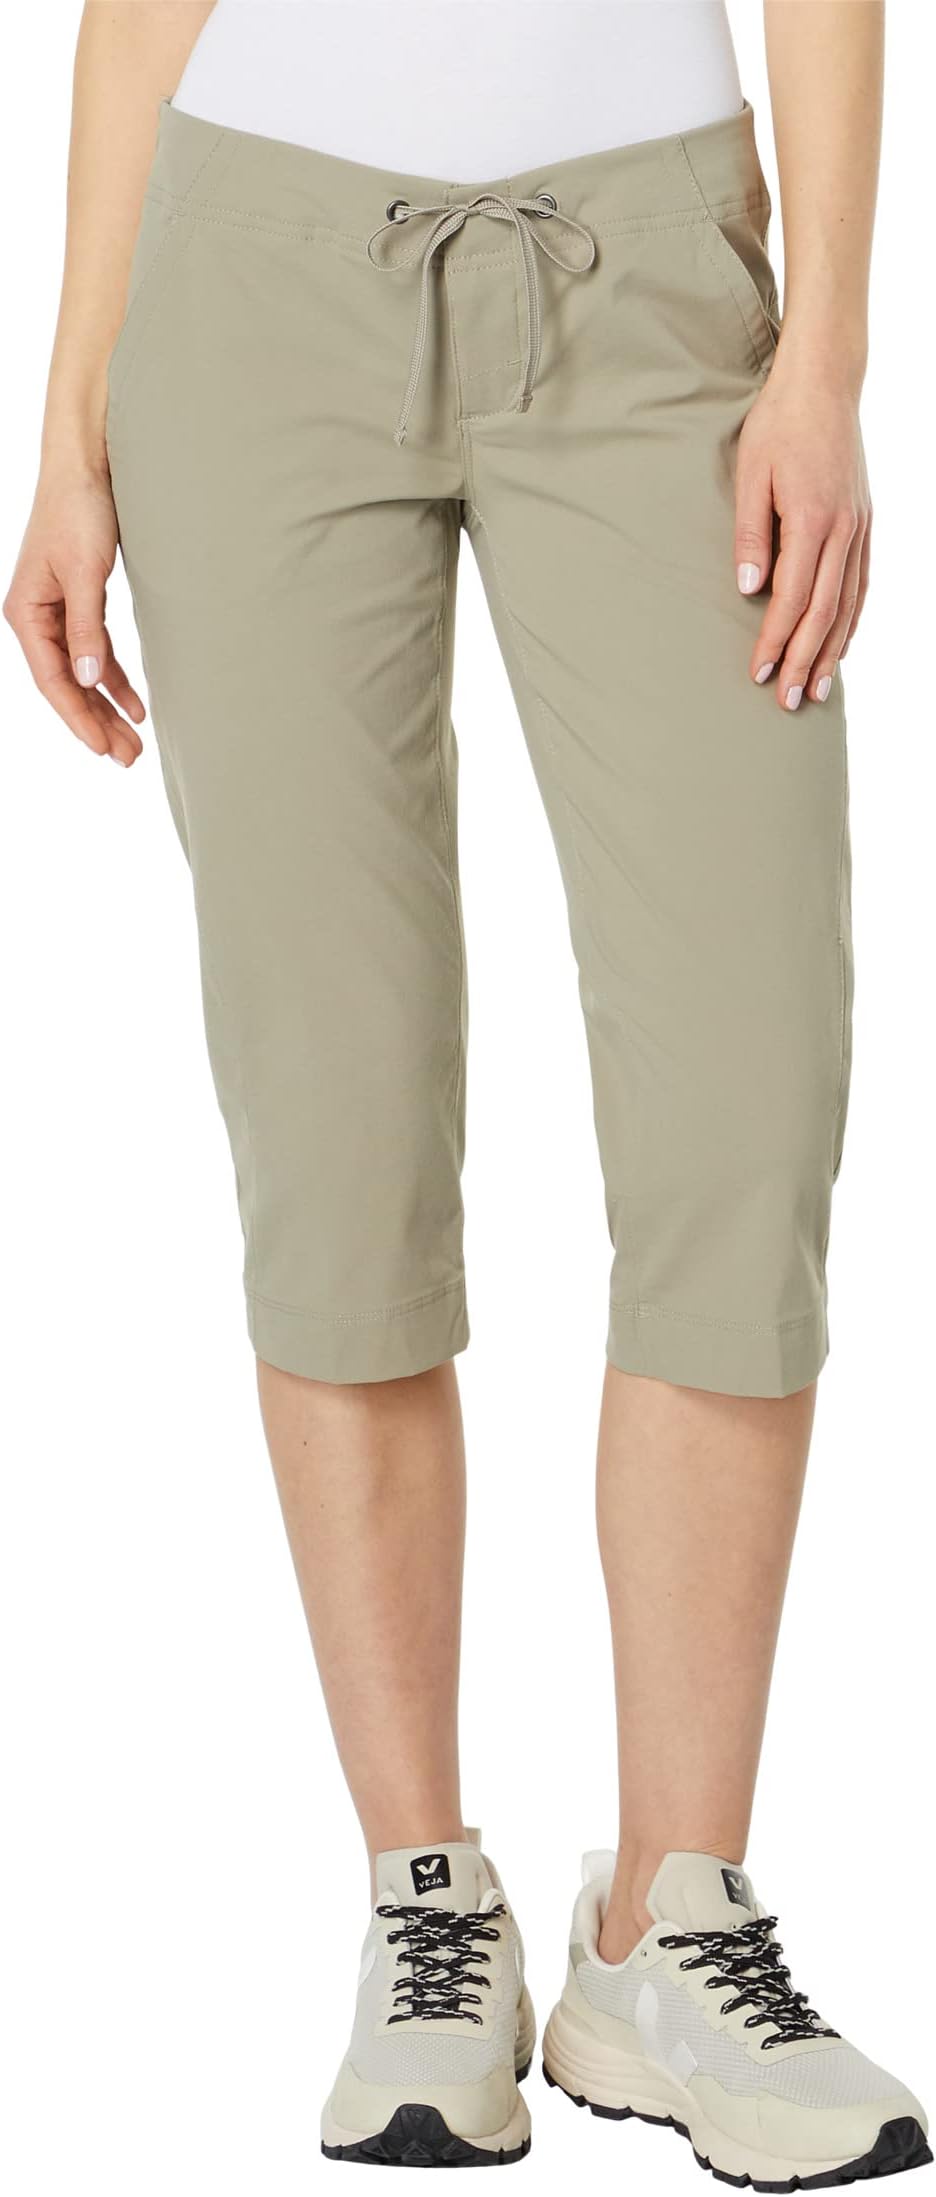 Брюки Anytime Outdoor Capri Columbia, цвет Tusk columbia брюки женские columbia anytime outdoor размер 40 42